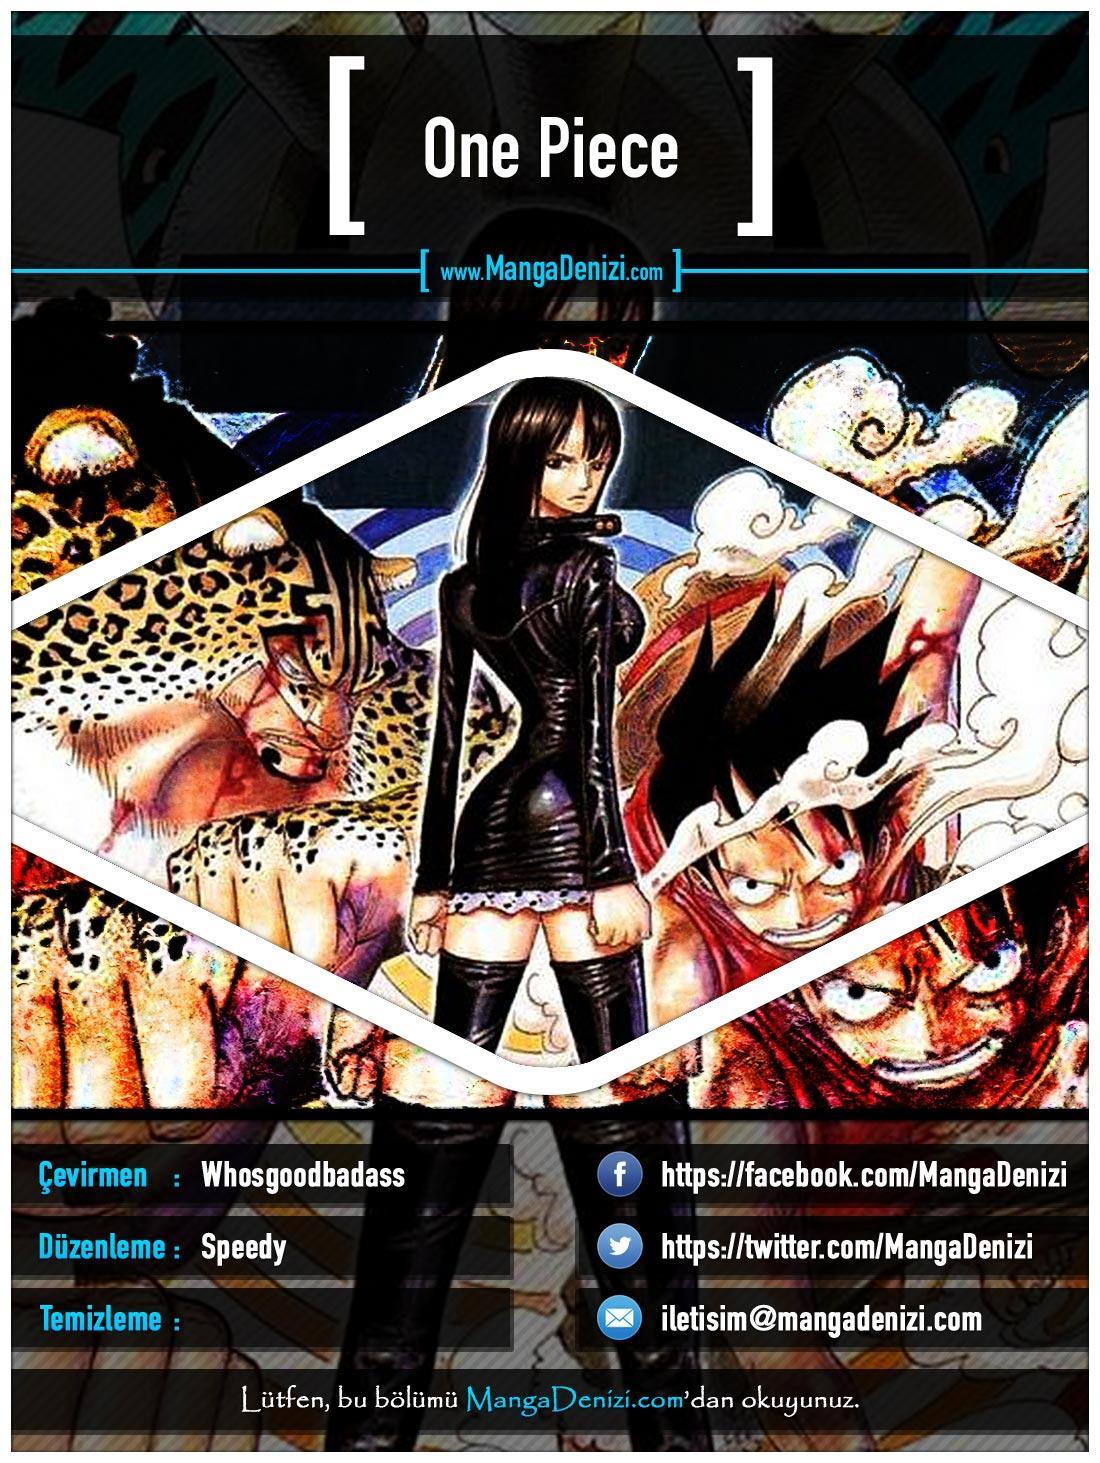 One Piece [Renkli] mangasının 0429 bölümünün 1. sayfasını okuyorsunuz.